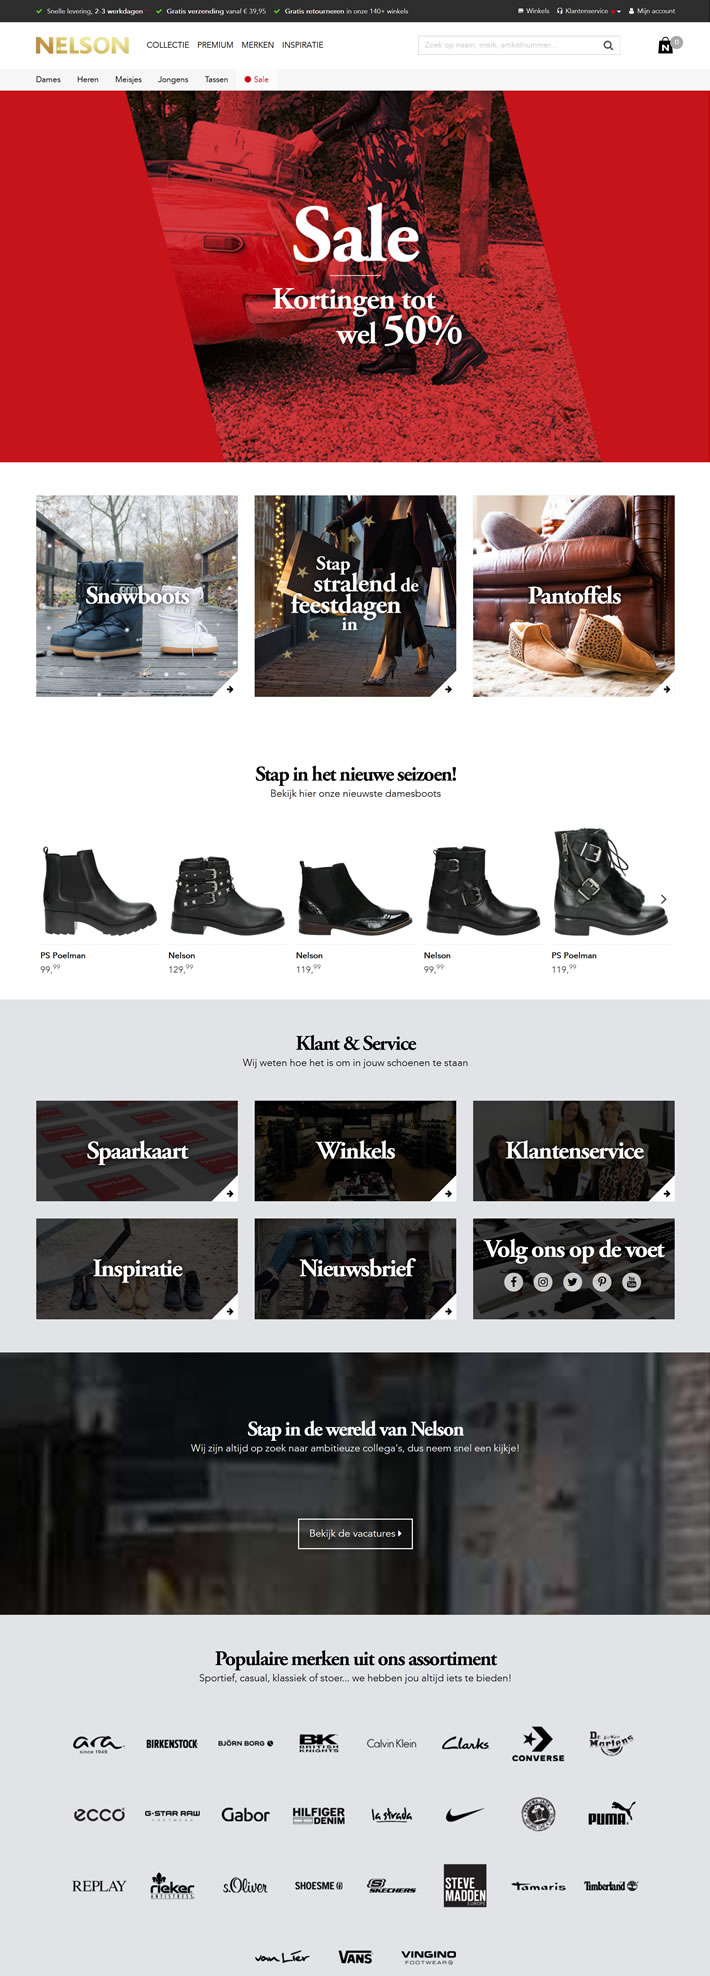 Nelson Schoenen荷兰鞋子在线购物网站